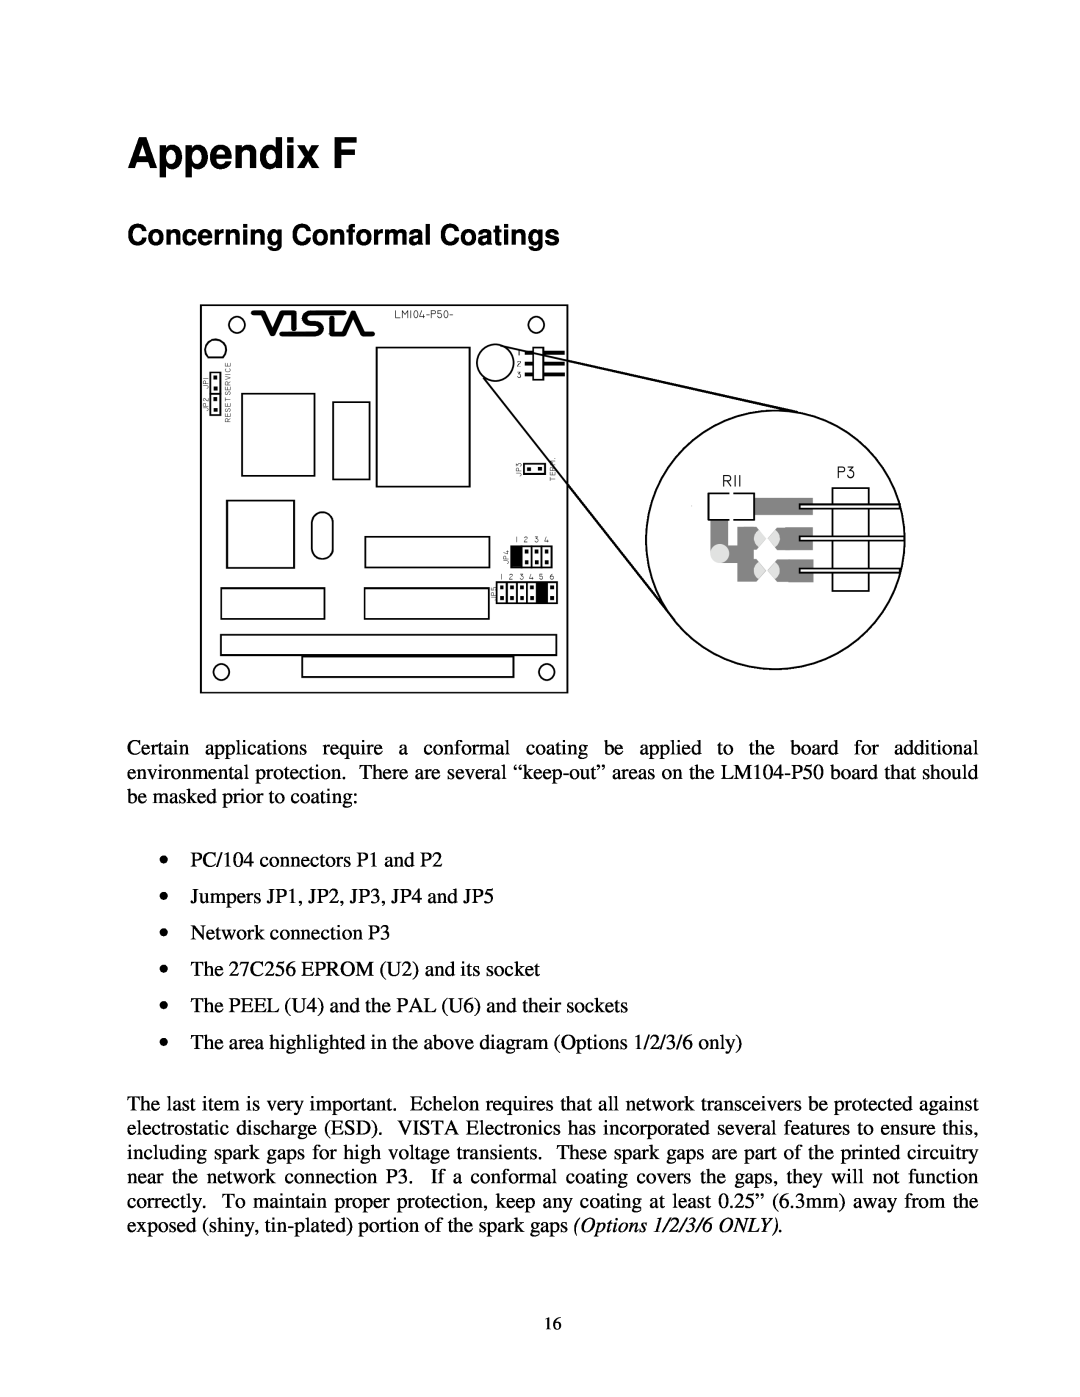 Vista LM104-P50 manual Appendix F, Concerning Conformal Coatings 